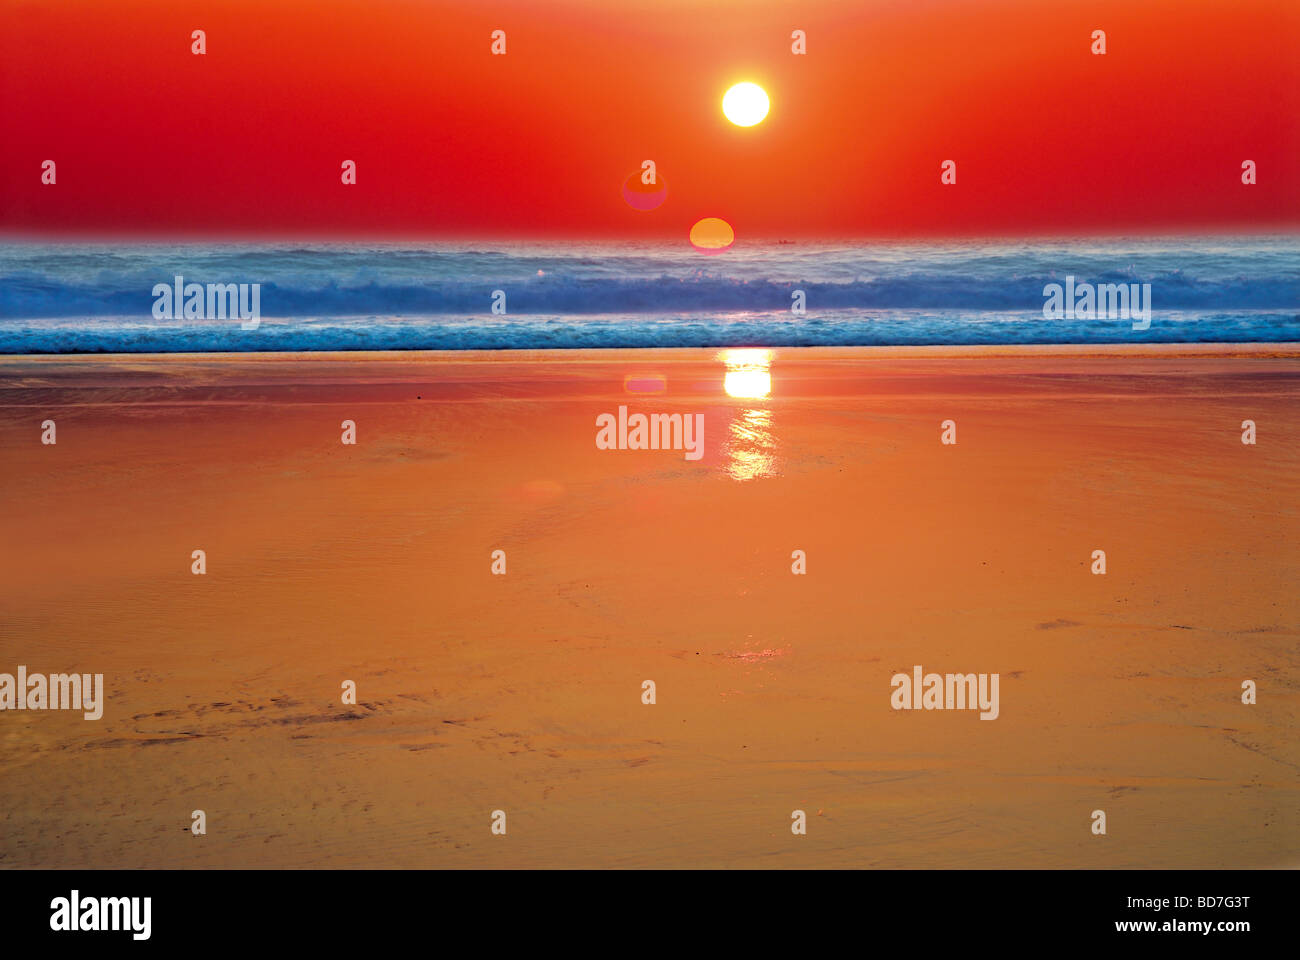 Portugal, Algarve: HDR-Bild von drei Sonnenuntergang Bilder Stockfoto